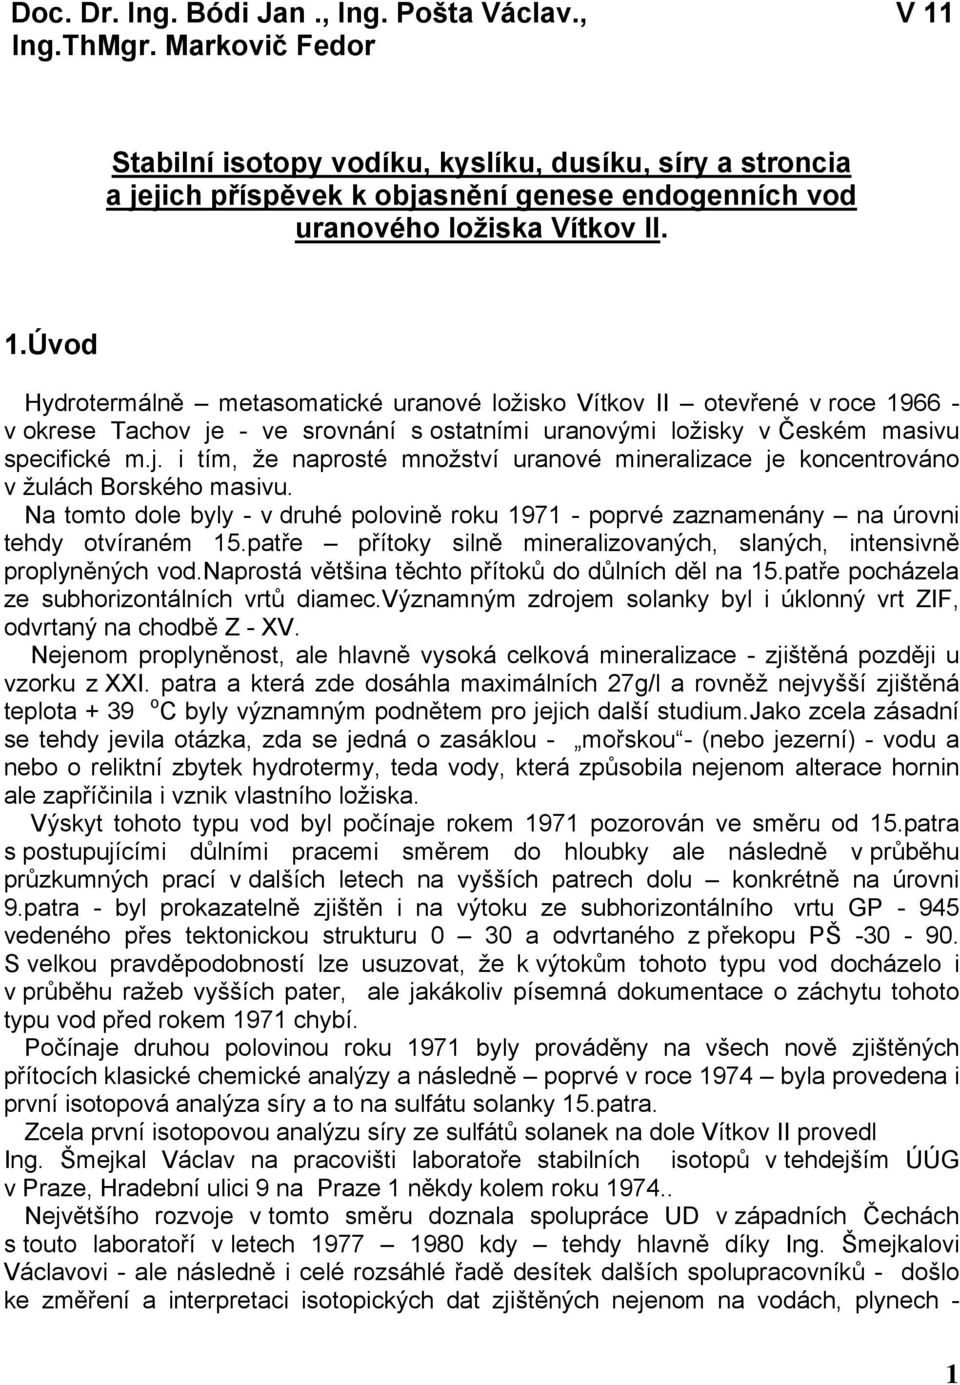 Úvod Hydrotermálně metasomatické uranové ložisko Vítkov II otevřené v roce 1966 - v okrese Tachov je - ve srovnání s ostatními uranovými ložisky v Českém masivu specifické m.j. i tím, že naprosté množství uranové mineralizace je koncentrováno v žulách Borského masivu.